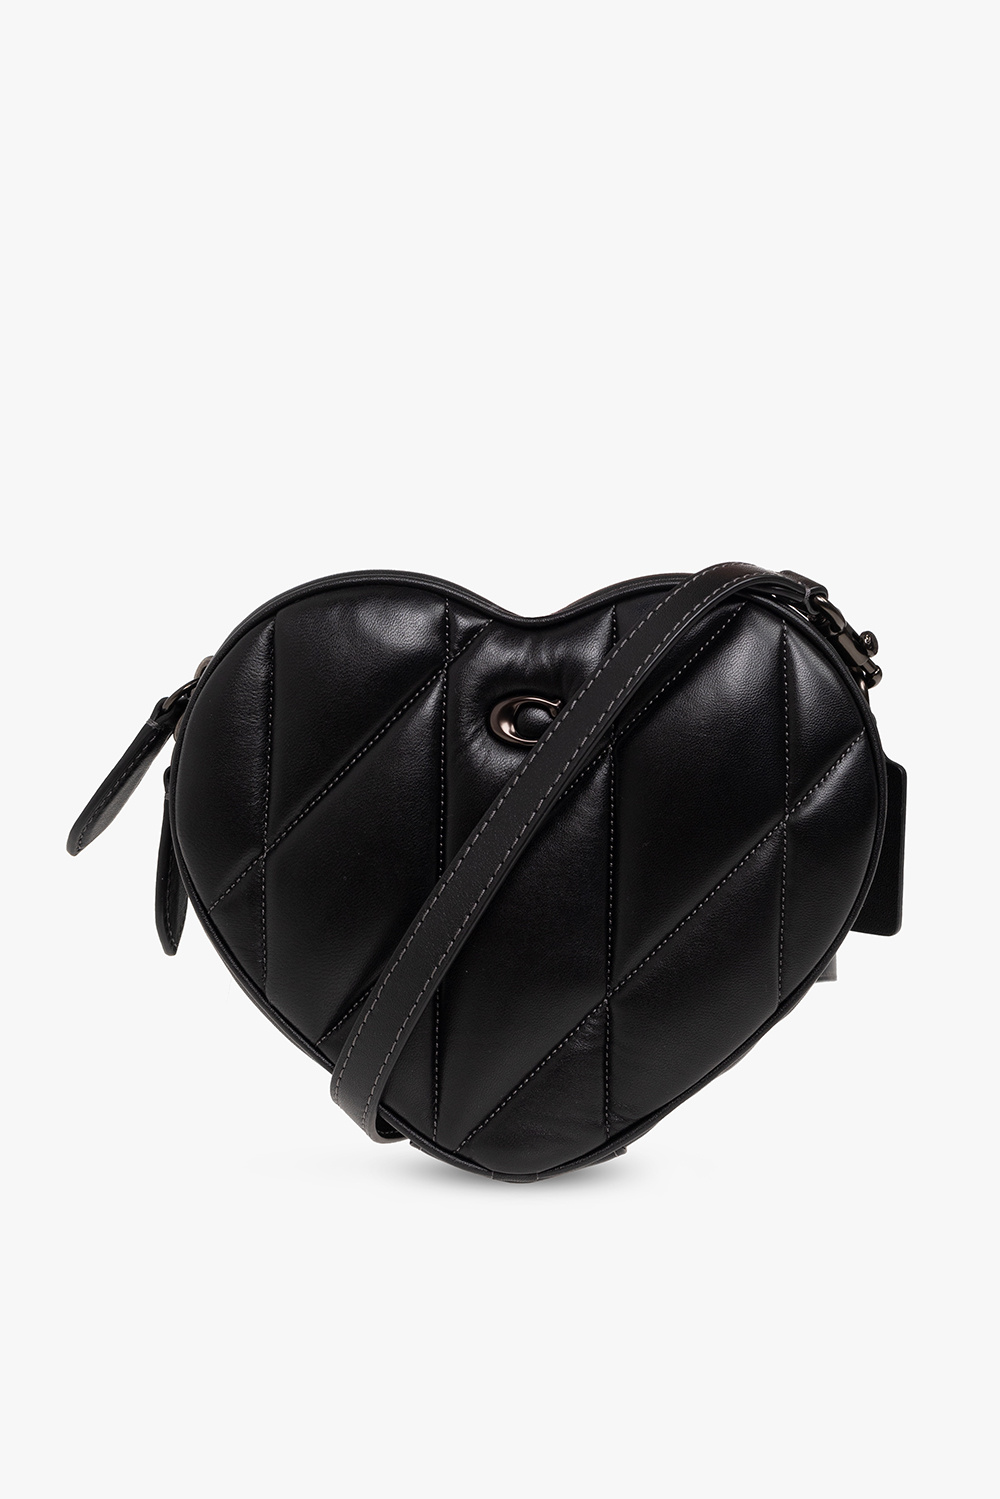 coach heart bag black